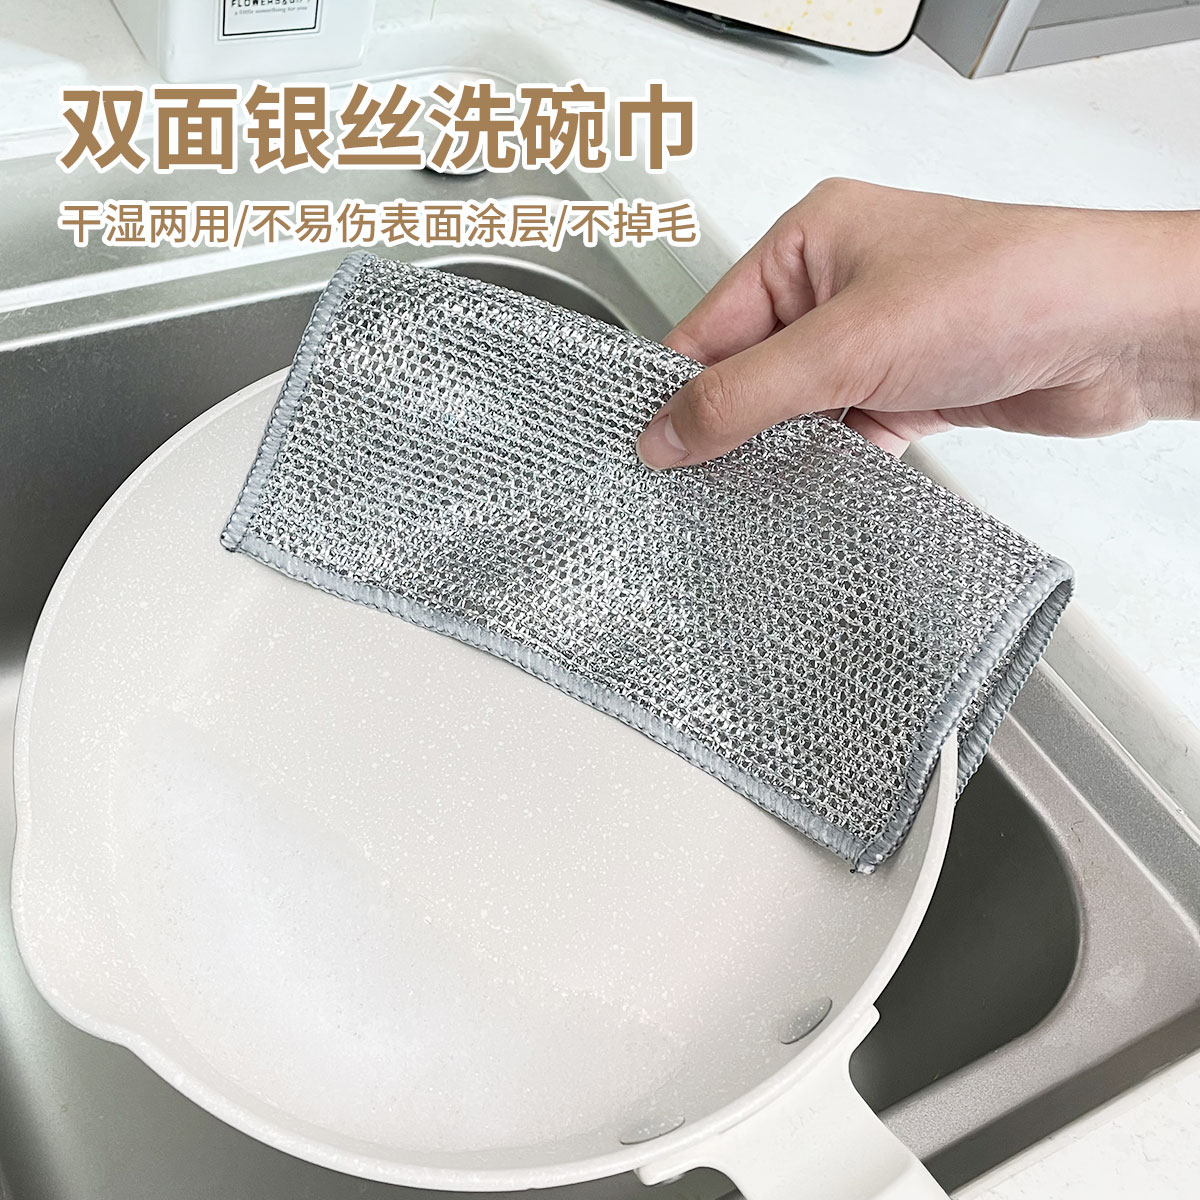 钢丝洗碗布双面网格不沾油清洁厨房灶